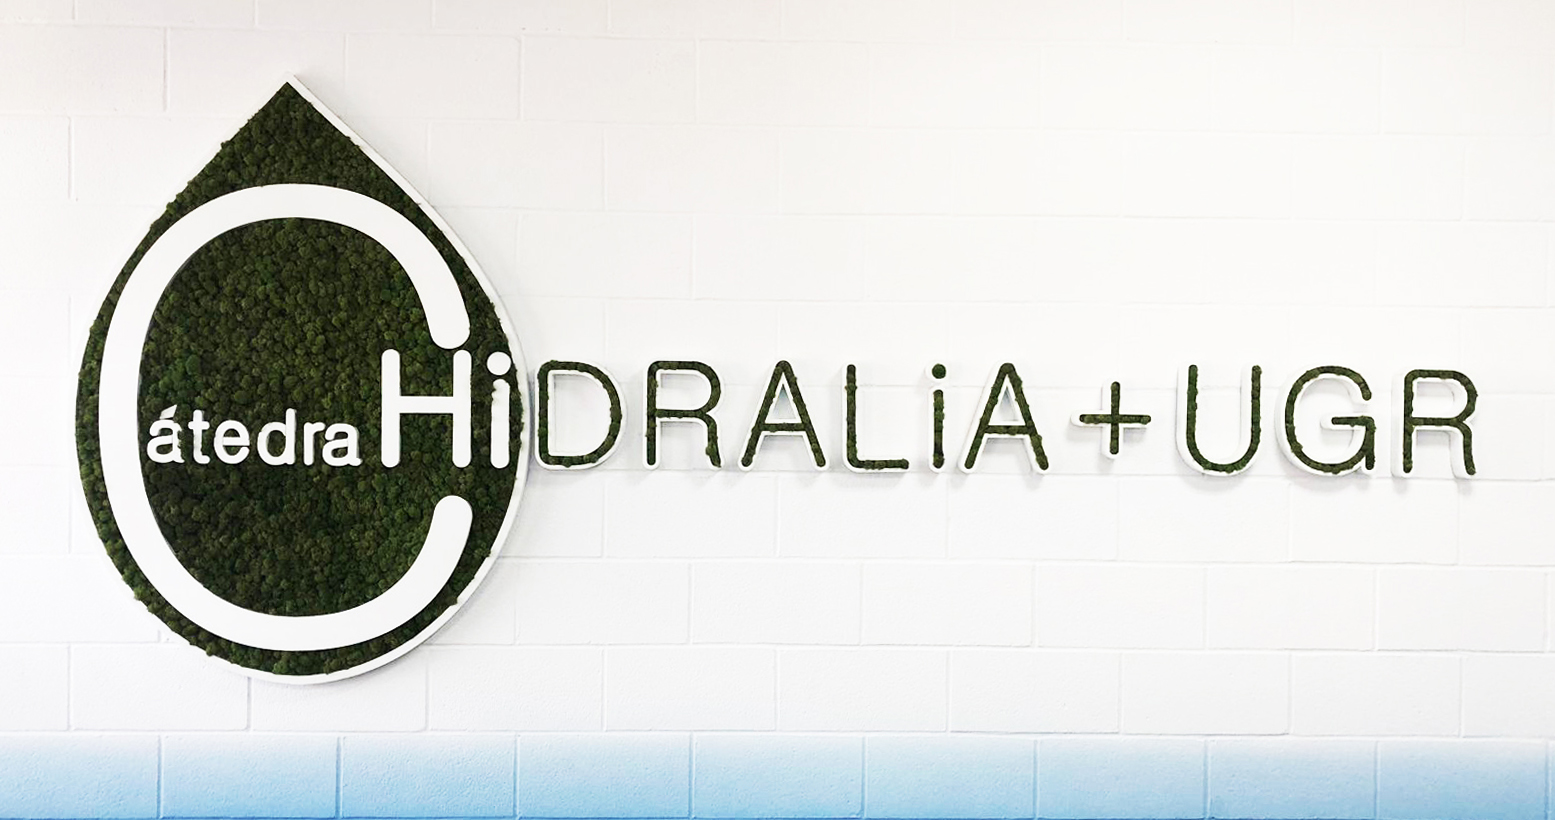 Catedra Hidralia + UGR